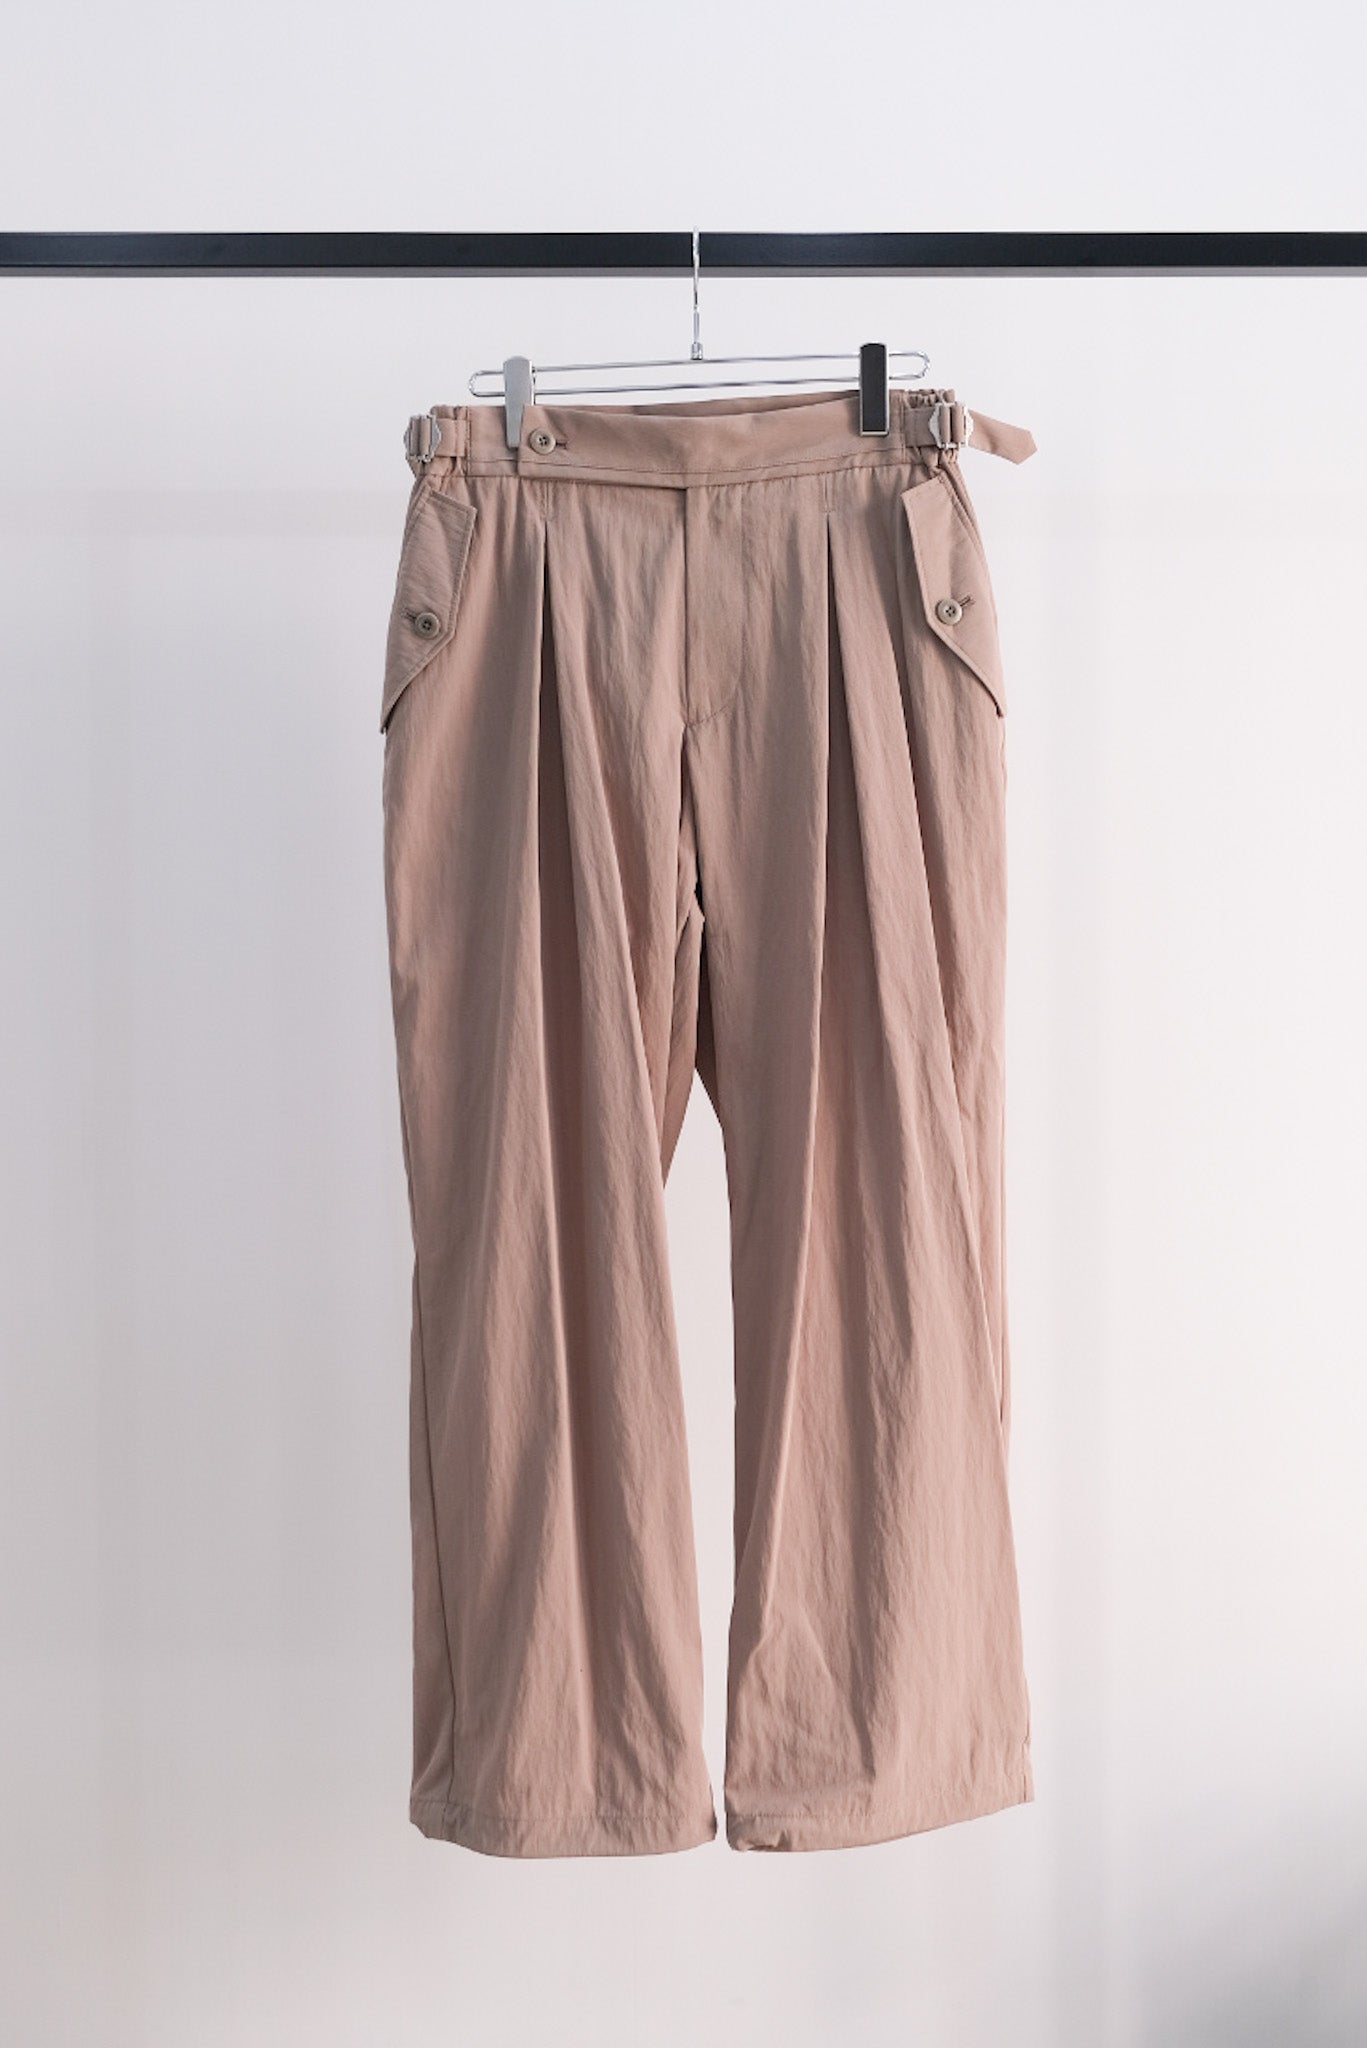 2-Tack  Cotton Nylon Military Pants